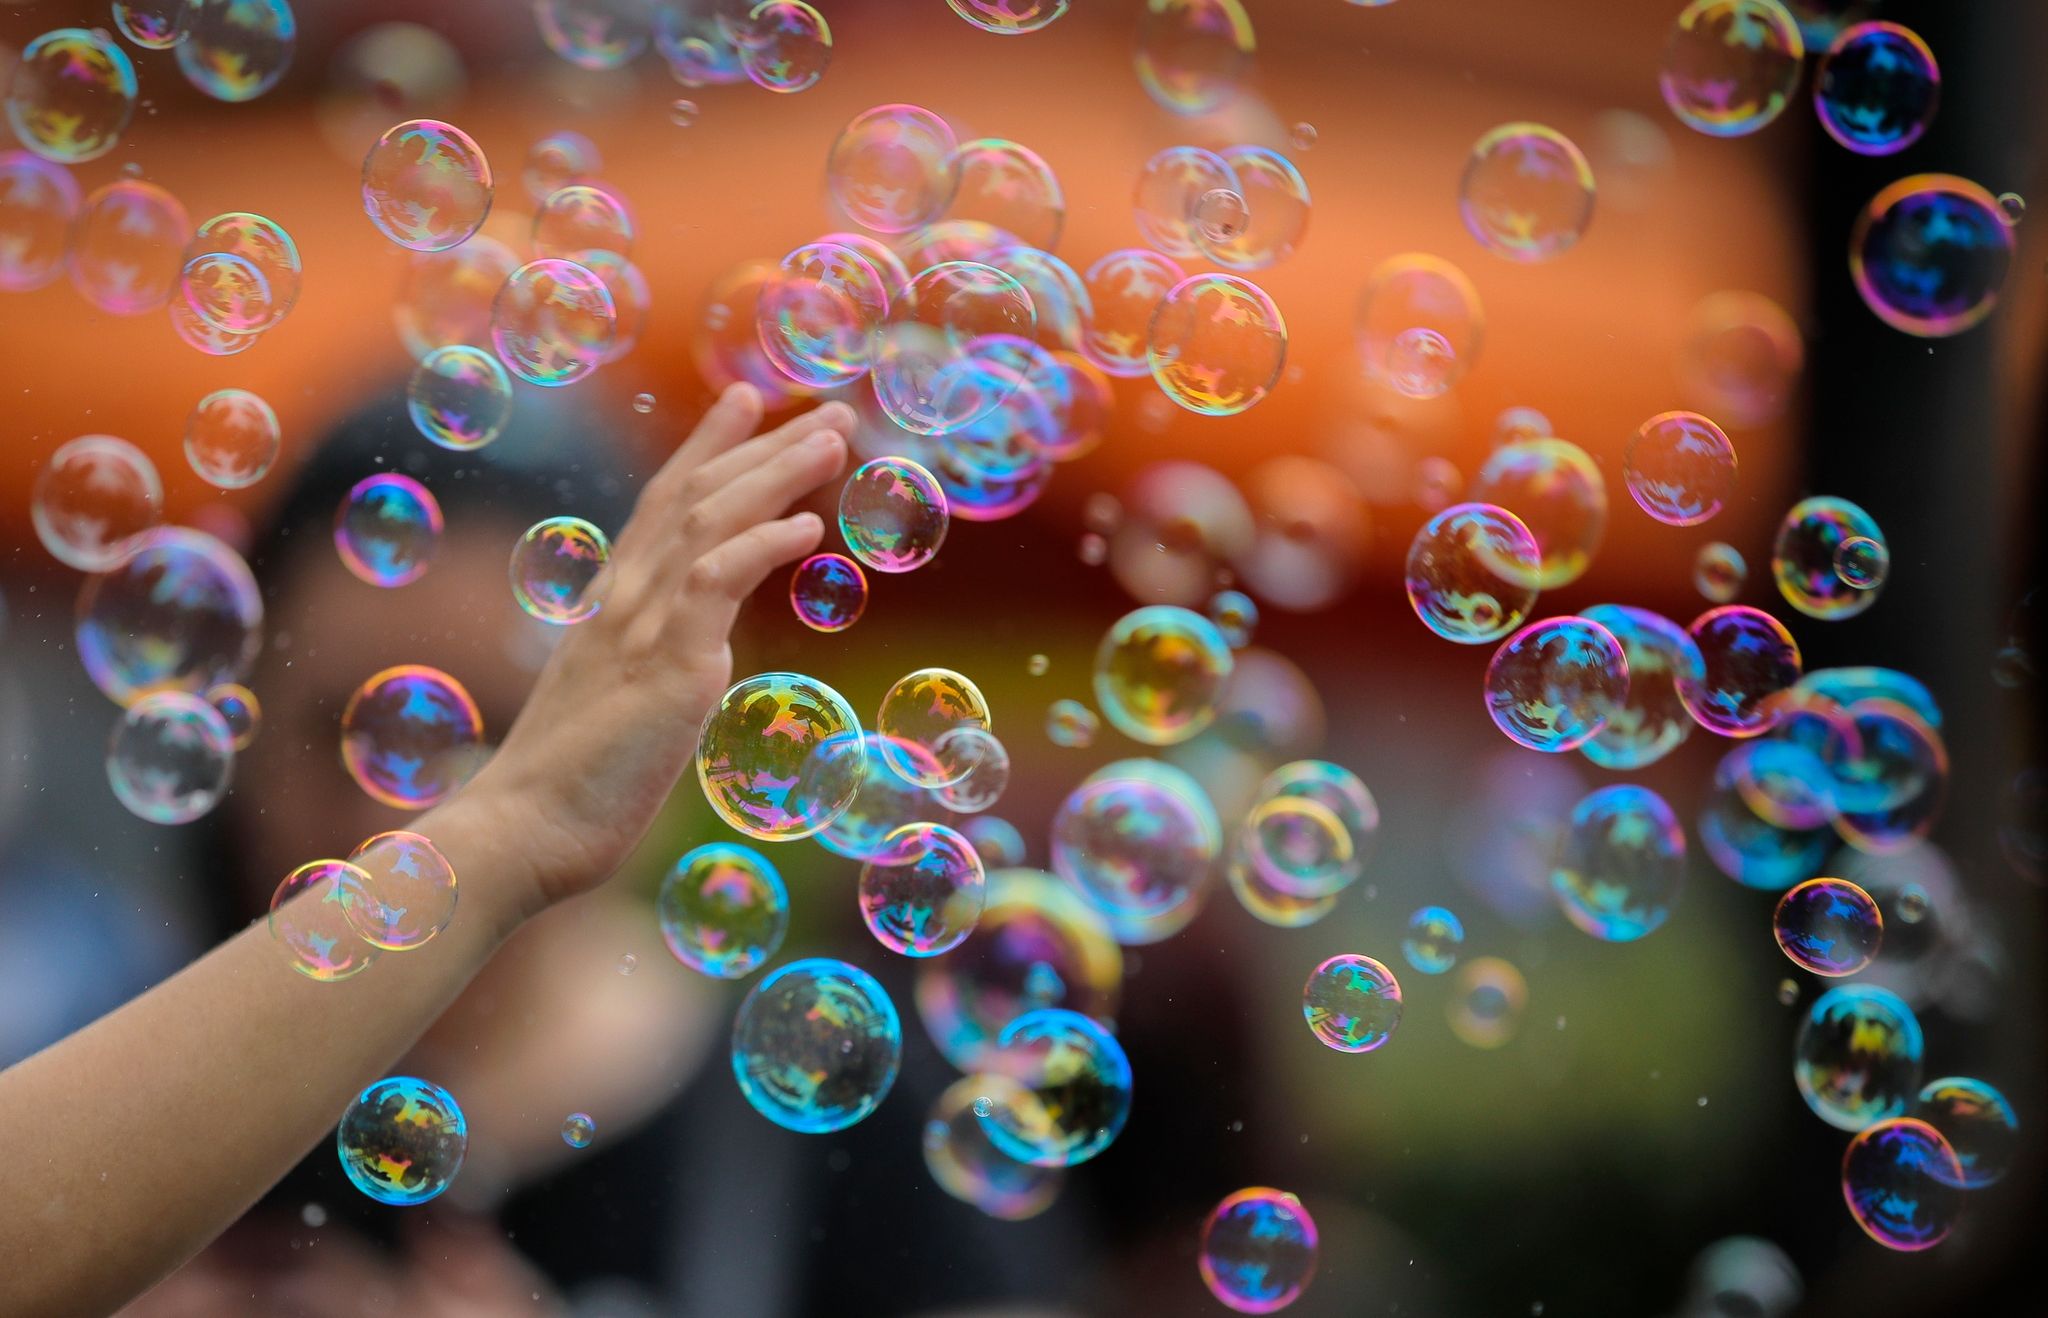 Verträglicher für Mensch, Tier und Umwelt als bunte Luftballons: Seifenblasen.